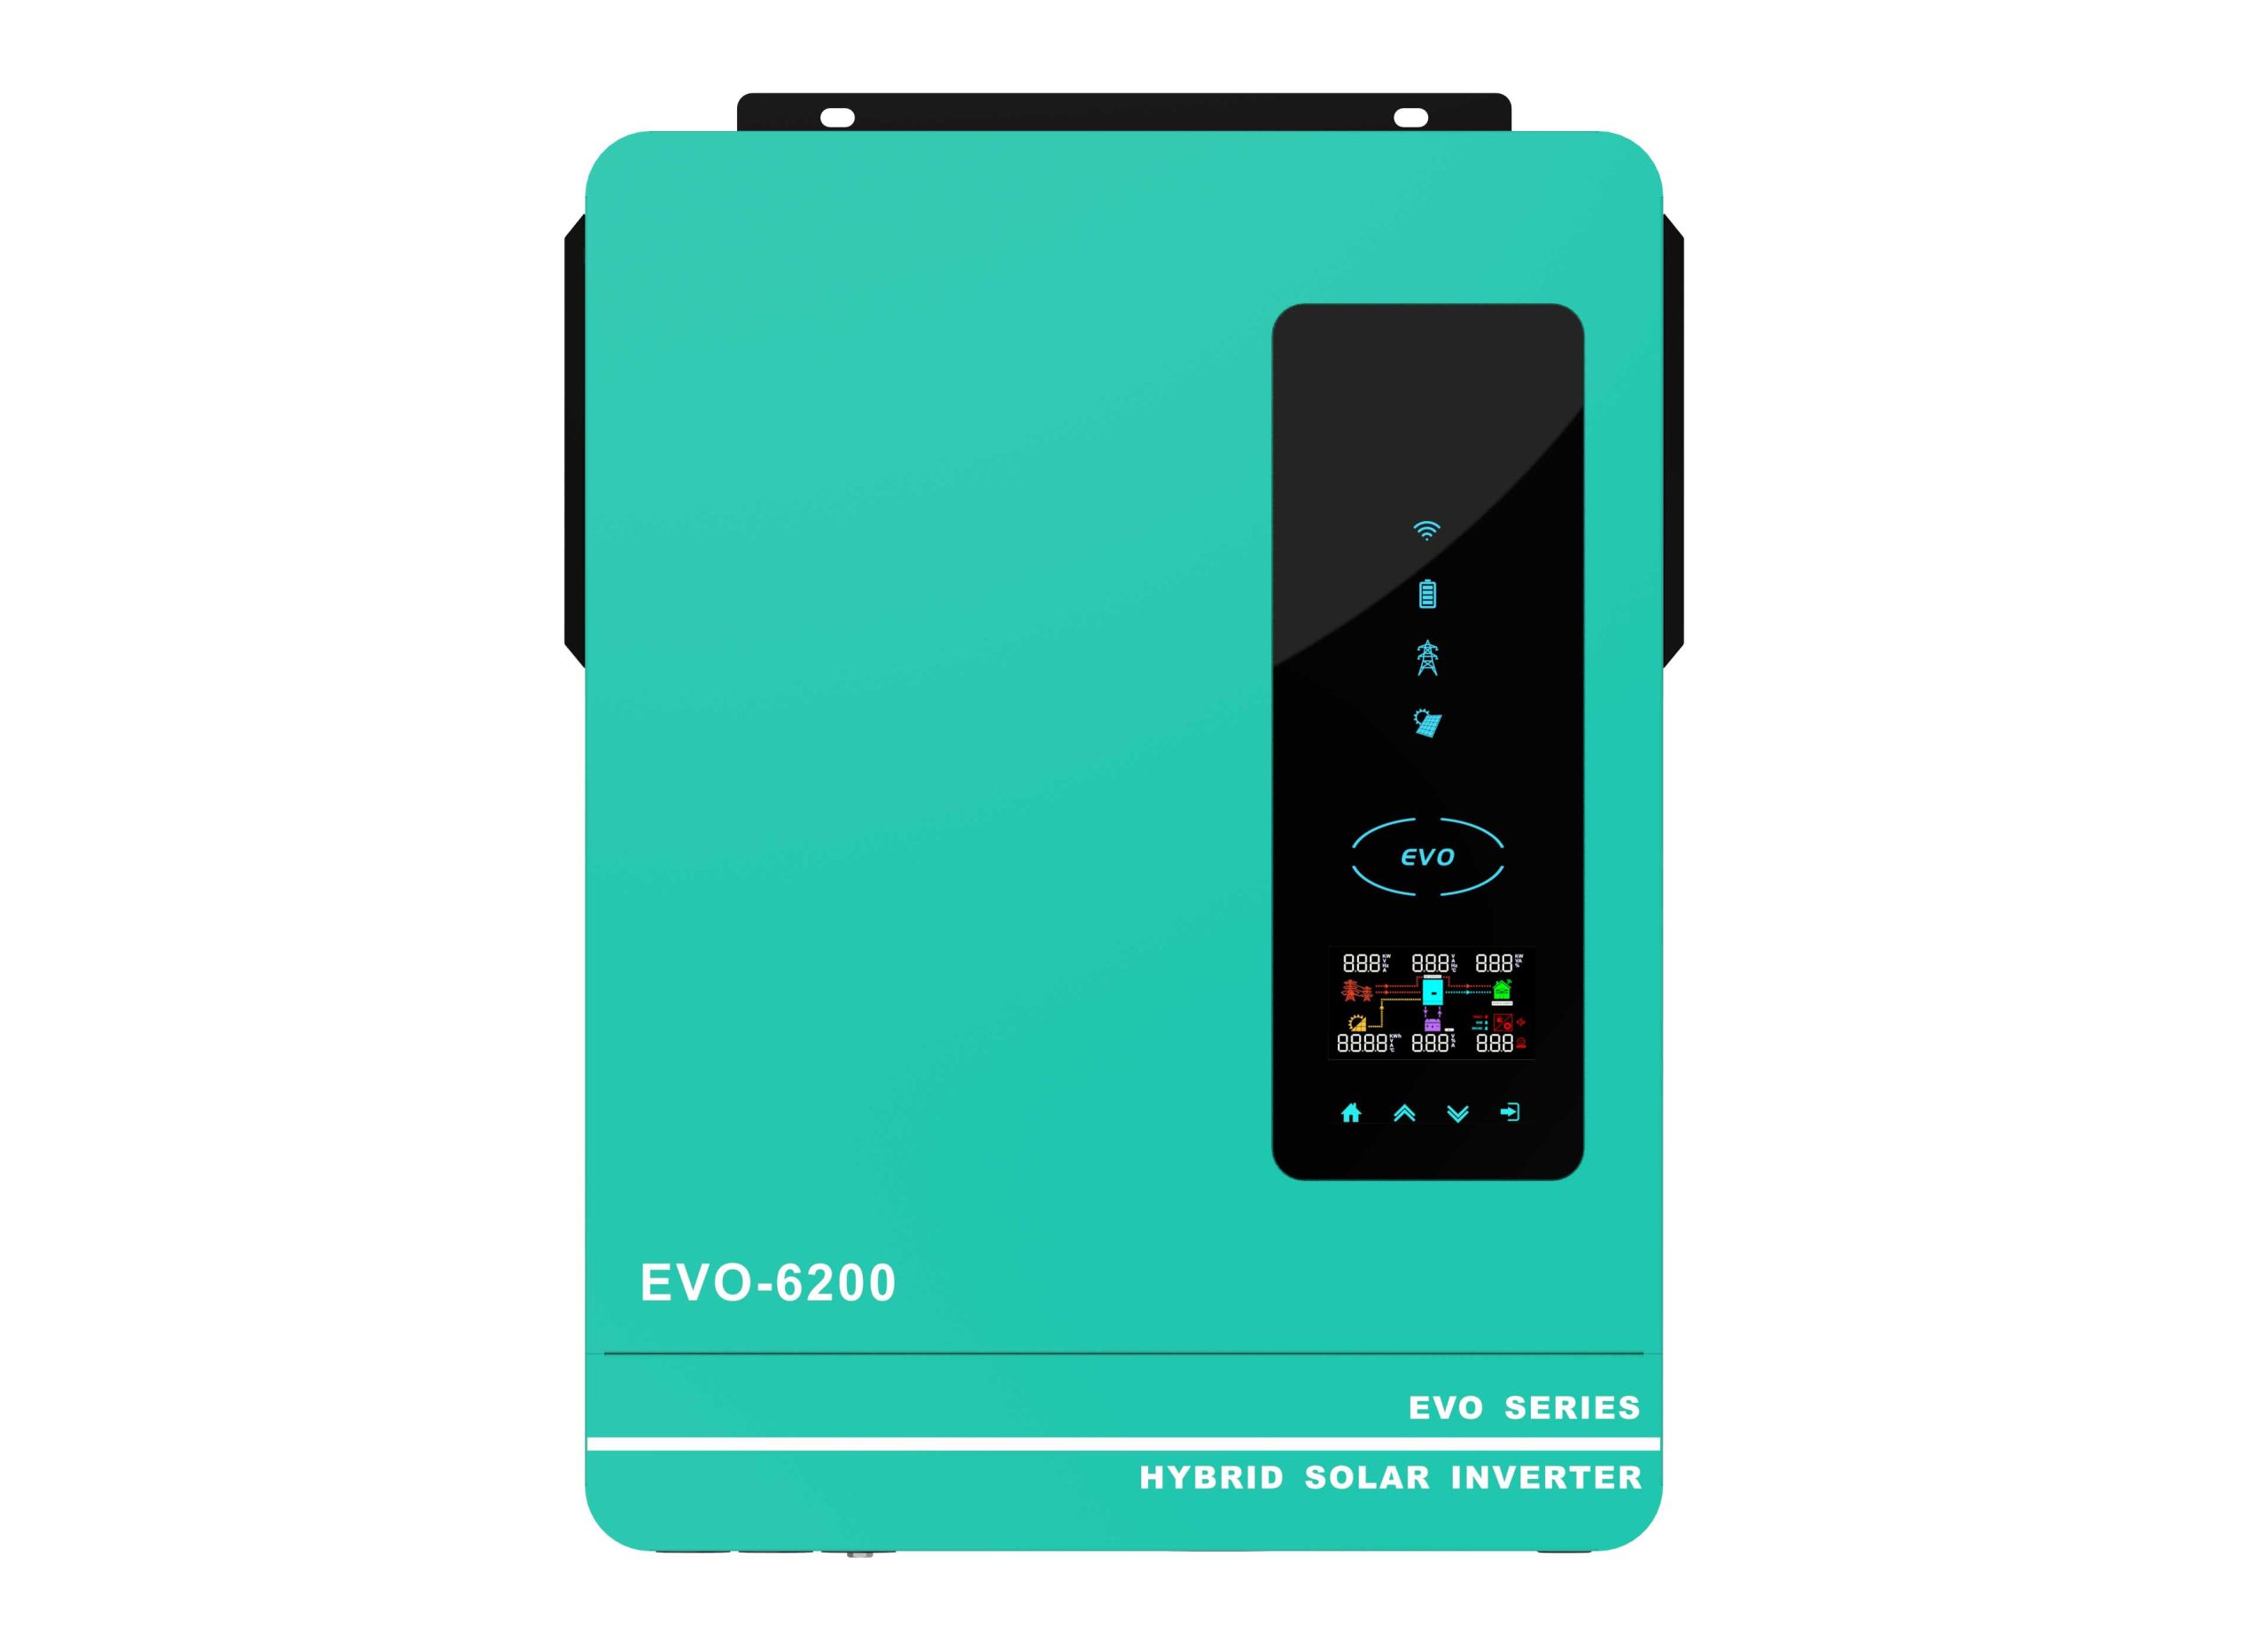 Anern Inverter EVO 3600W - 6200W Built In MPPT - Pure Sine Wave